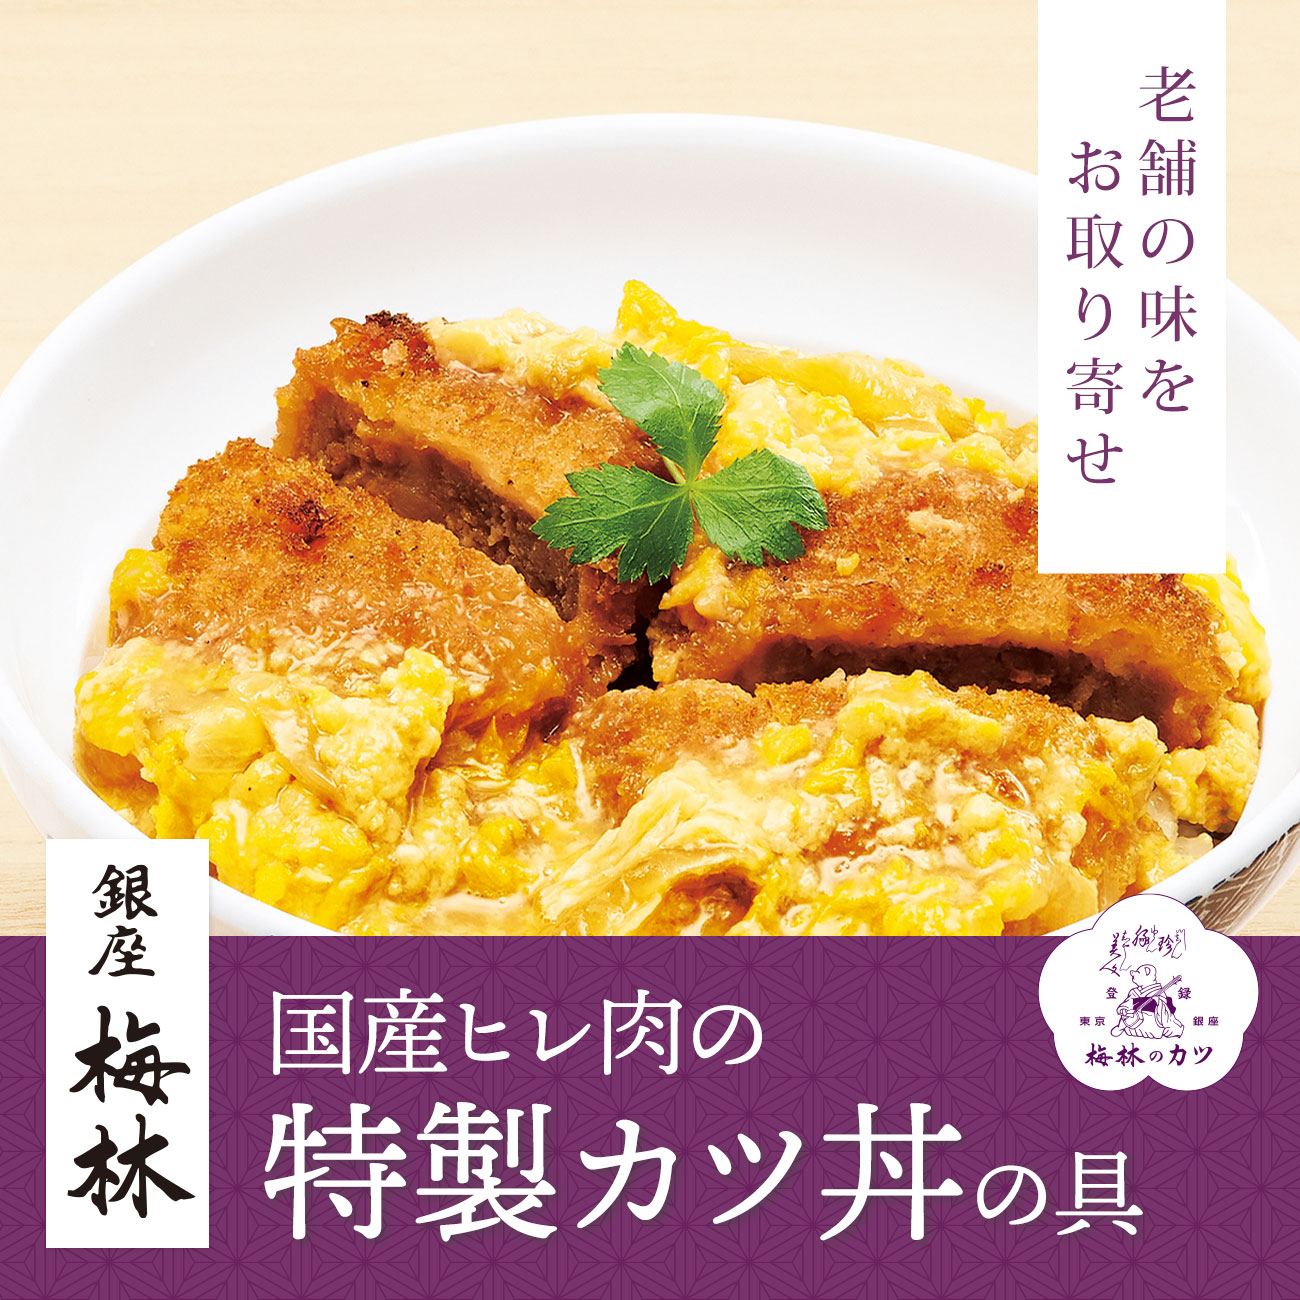 【特集】〈銀座 梅林〉国産ヒレ肉の特製カツ丼の具